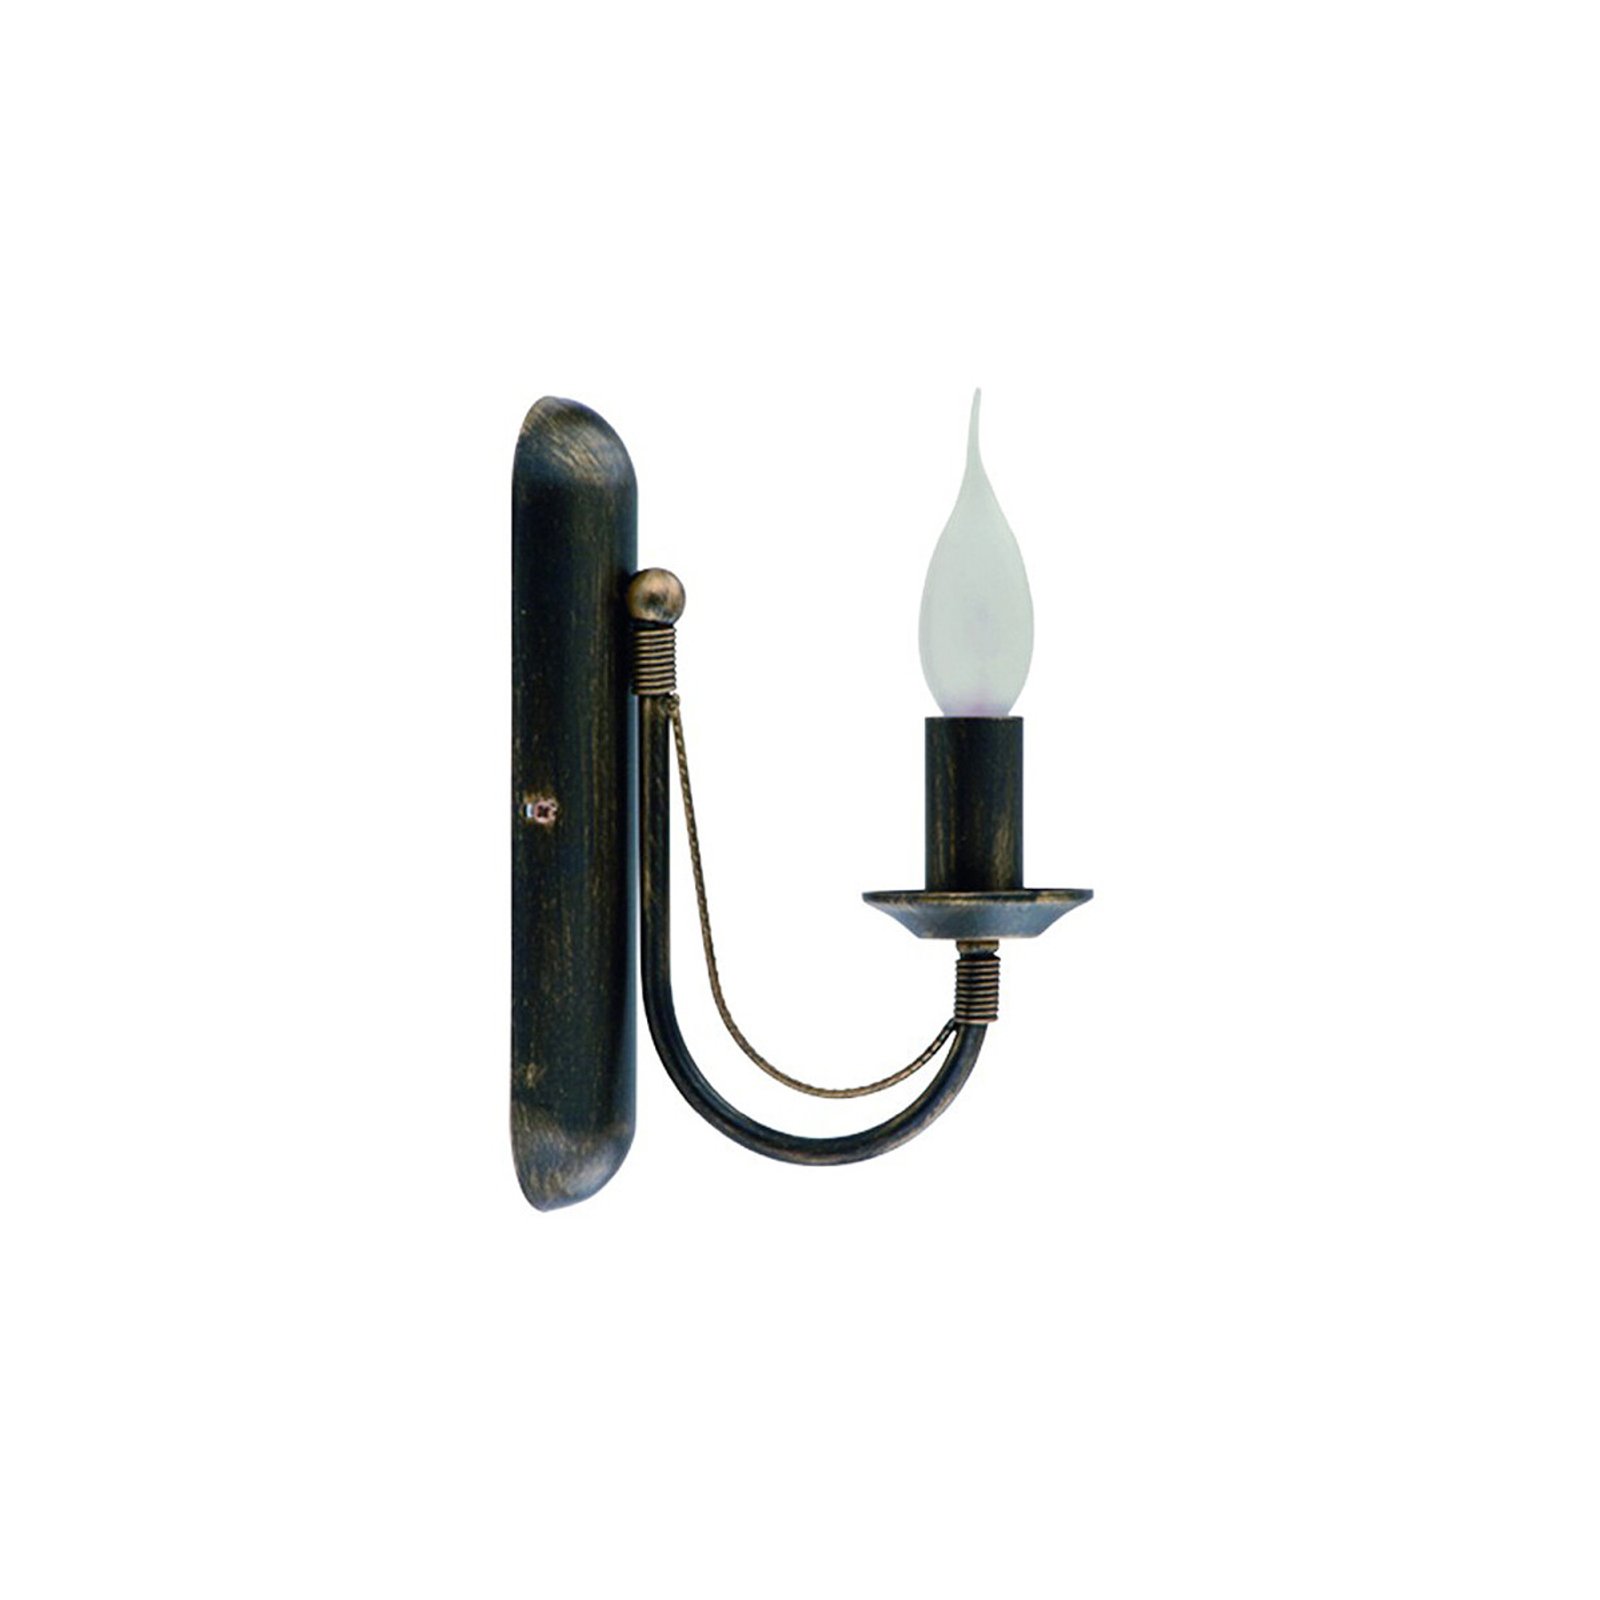 Ares zidna svjetiljka u dizajnu lustera, jedna žarulja